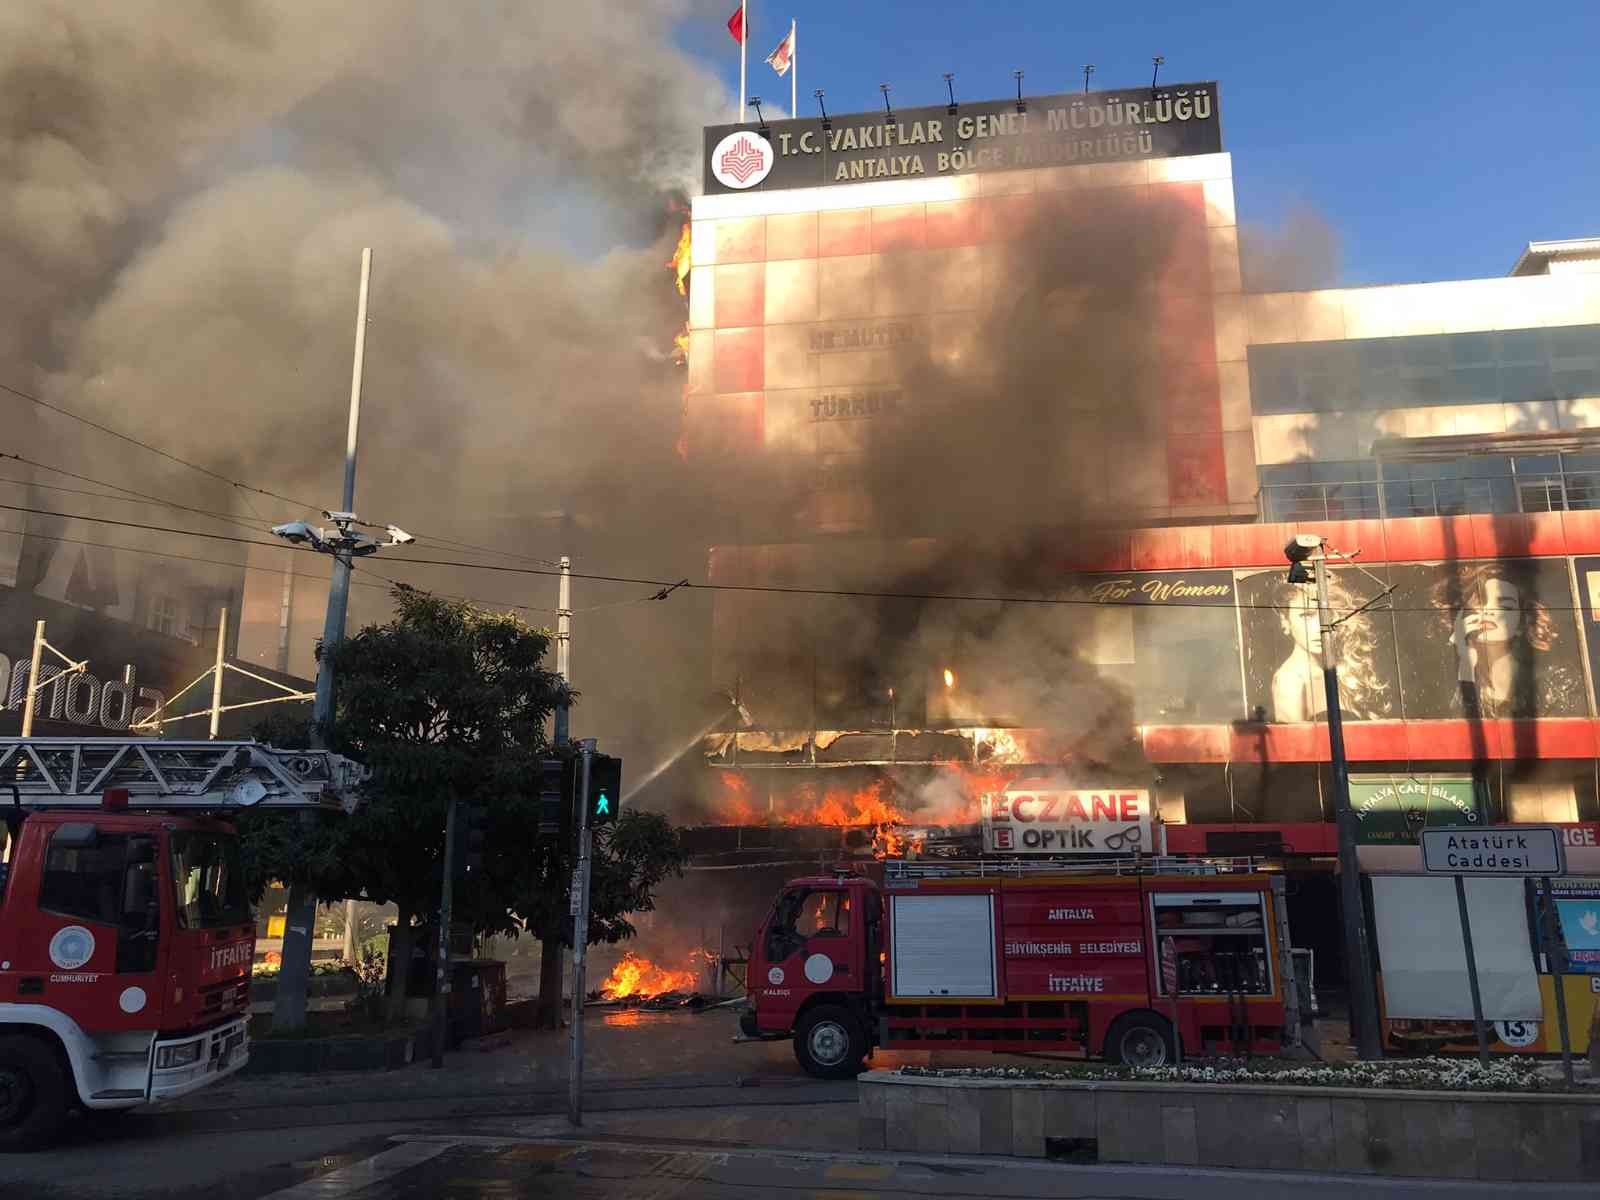 Antalya’da işyerinde yangın paniği, alevler binayı sardı duman gökyüzünü kapladı #antalya